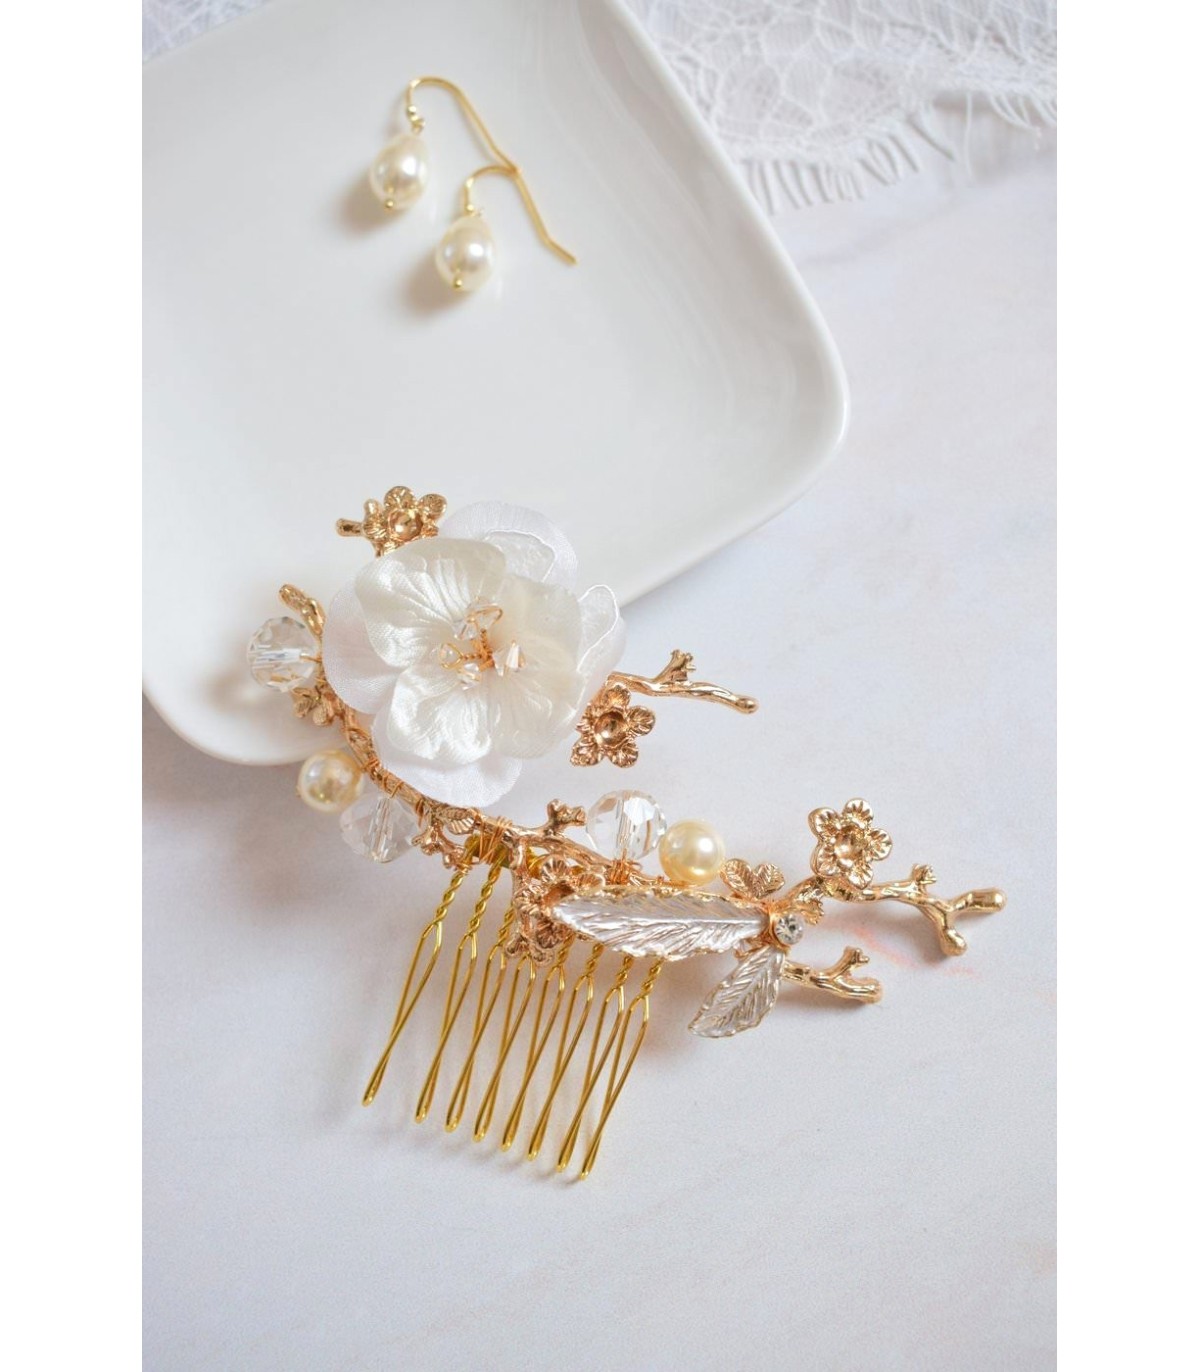 Peigne à cheveux romantique pour la mariée avec une fleur en soie et des perles de cristal sur une base en laiton fleurie